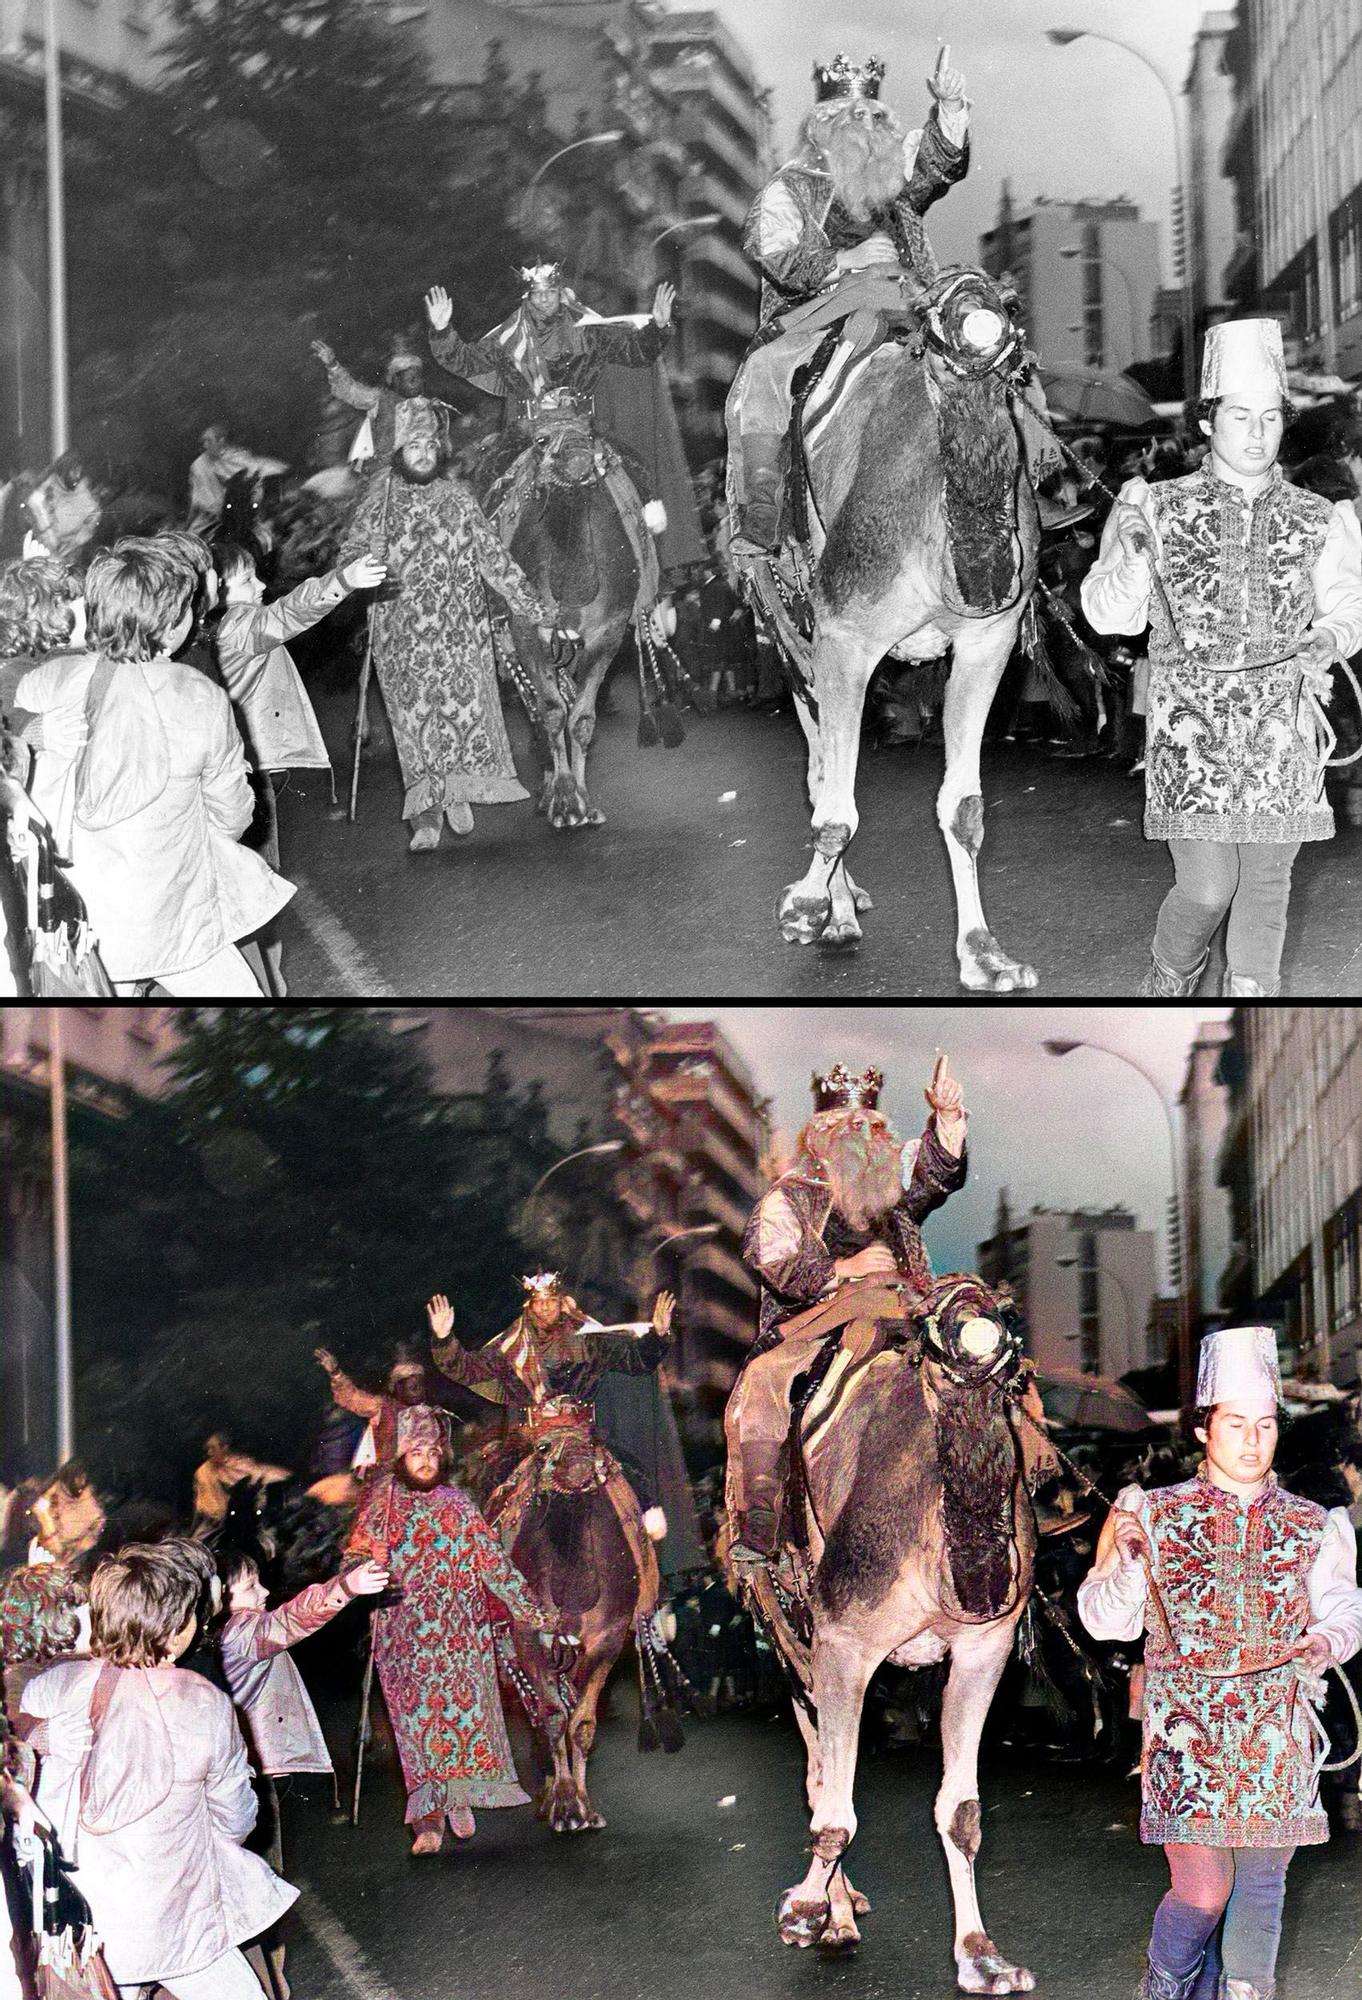 1982, Magar: Cabalgata de reyes magos en camello